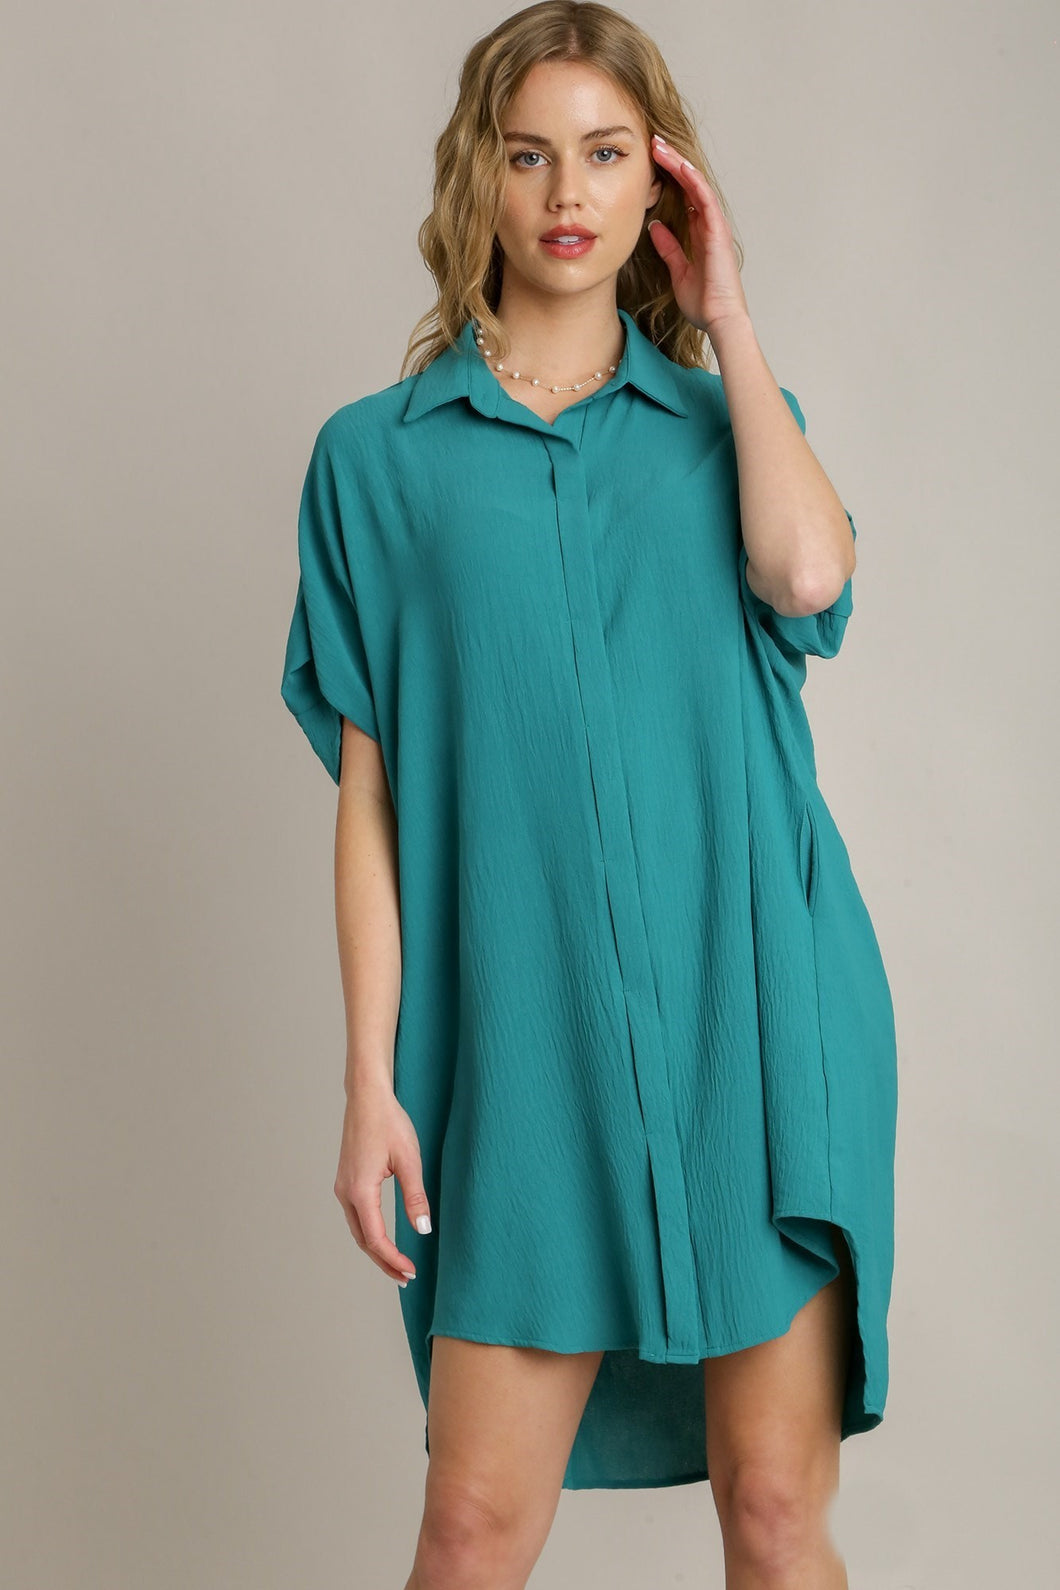 Umgee Placket Hidden Button Down Shirt Dress in Turquoise Dress Umgee   